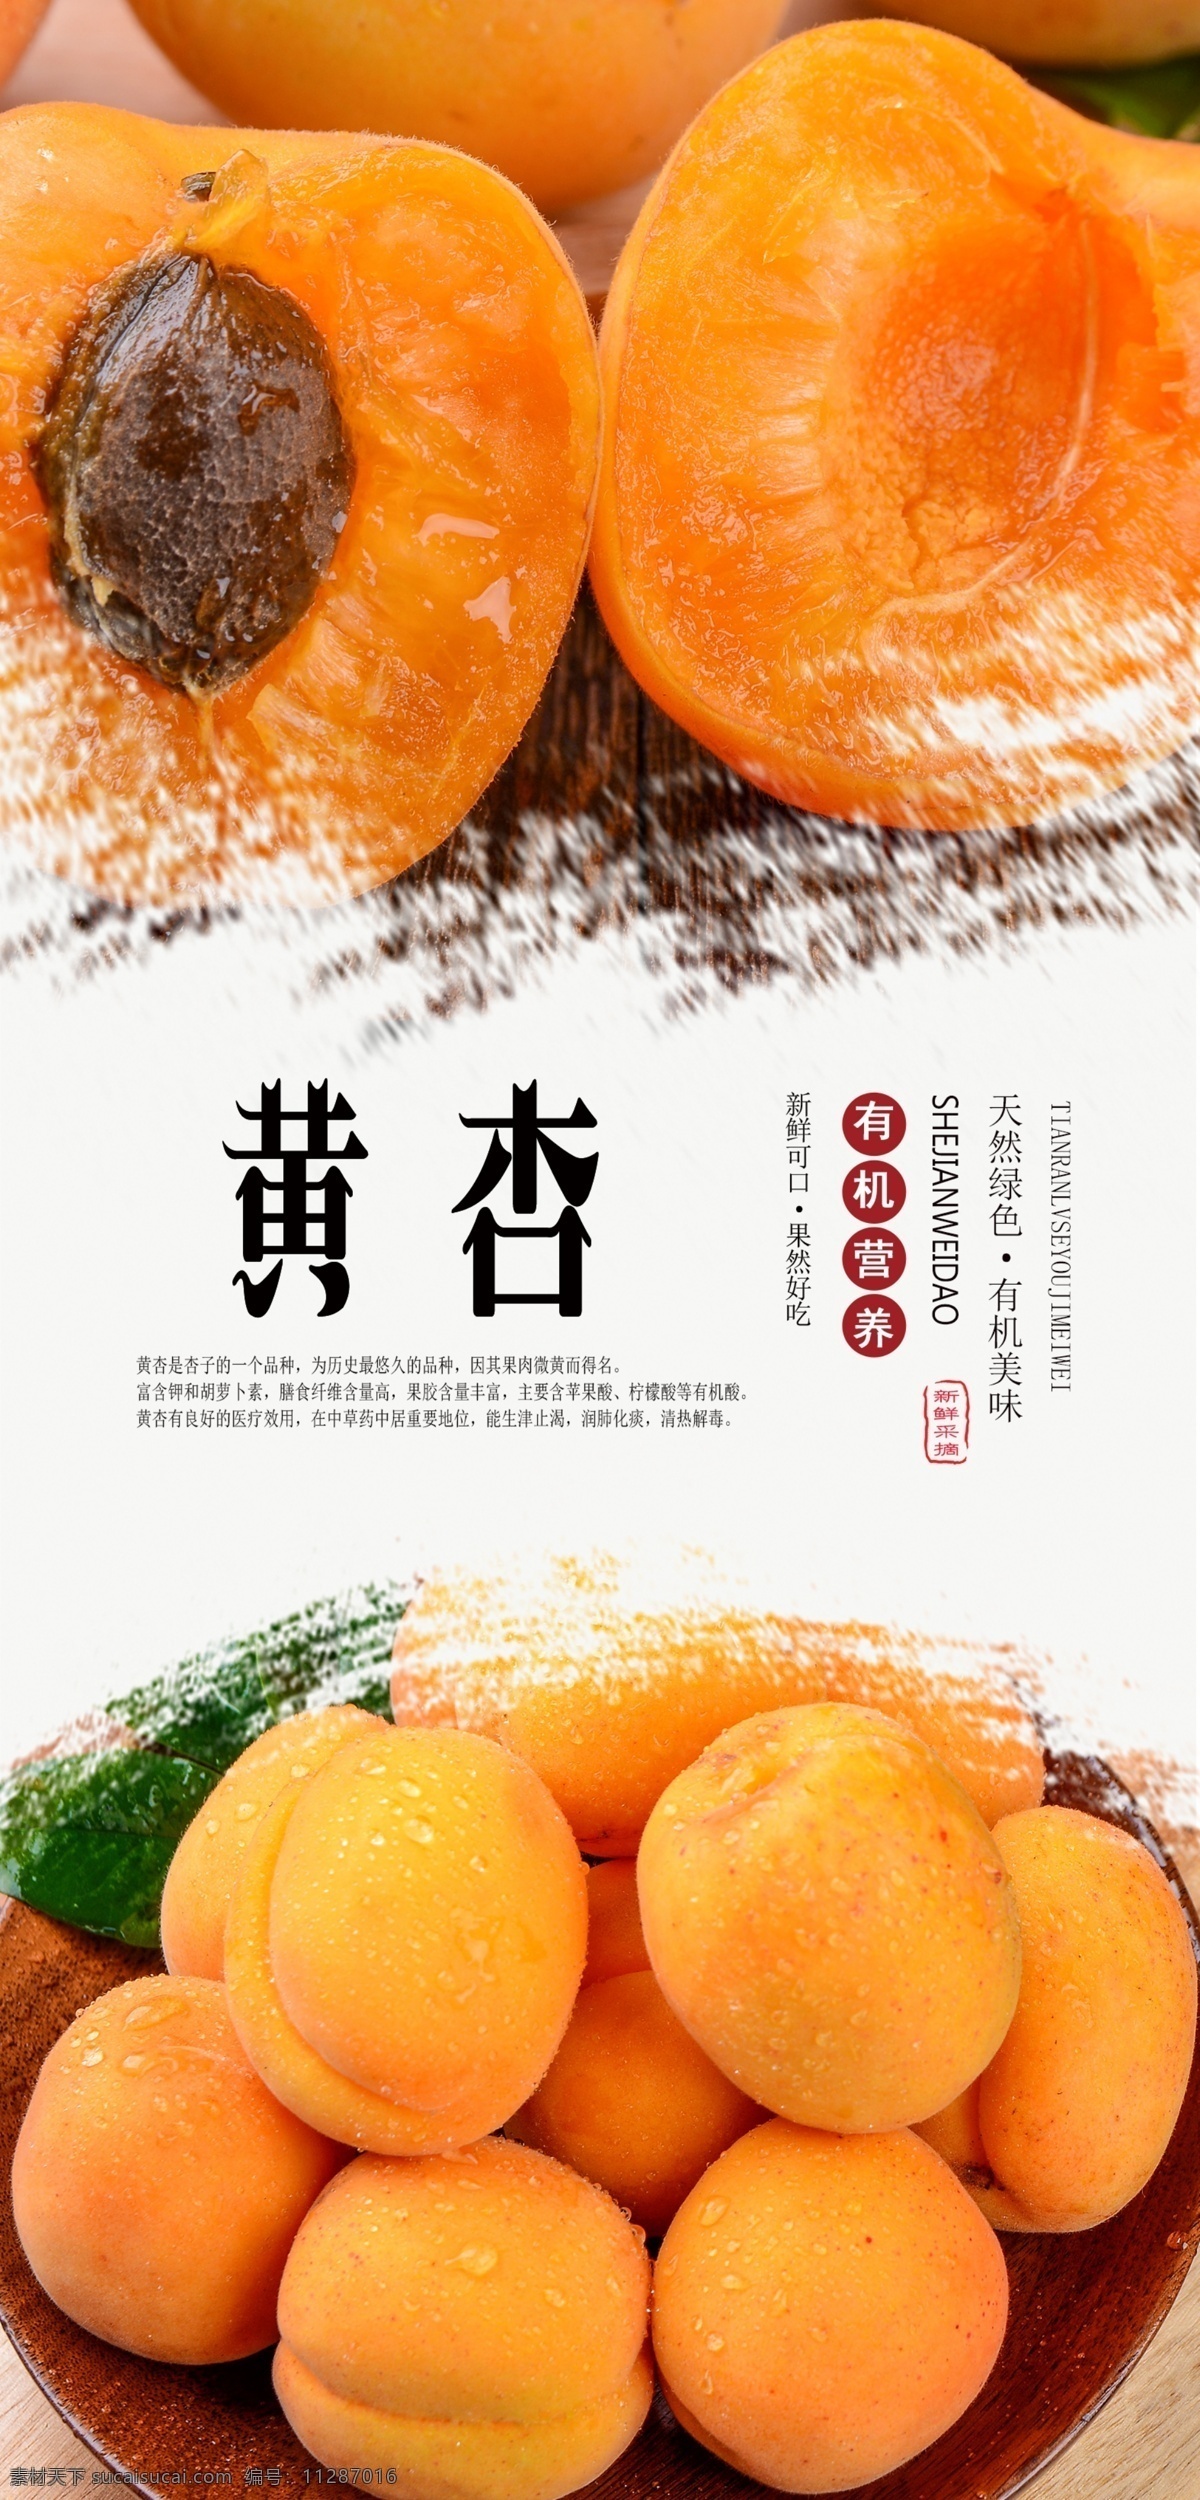 黄杏海报 黄杏 杏 杏子 水果 新鲜 天然 有机 无公害 绿色 健康 美味 分层